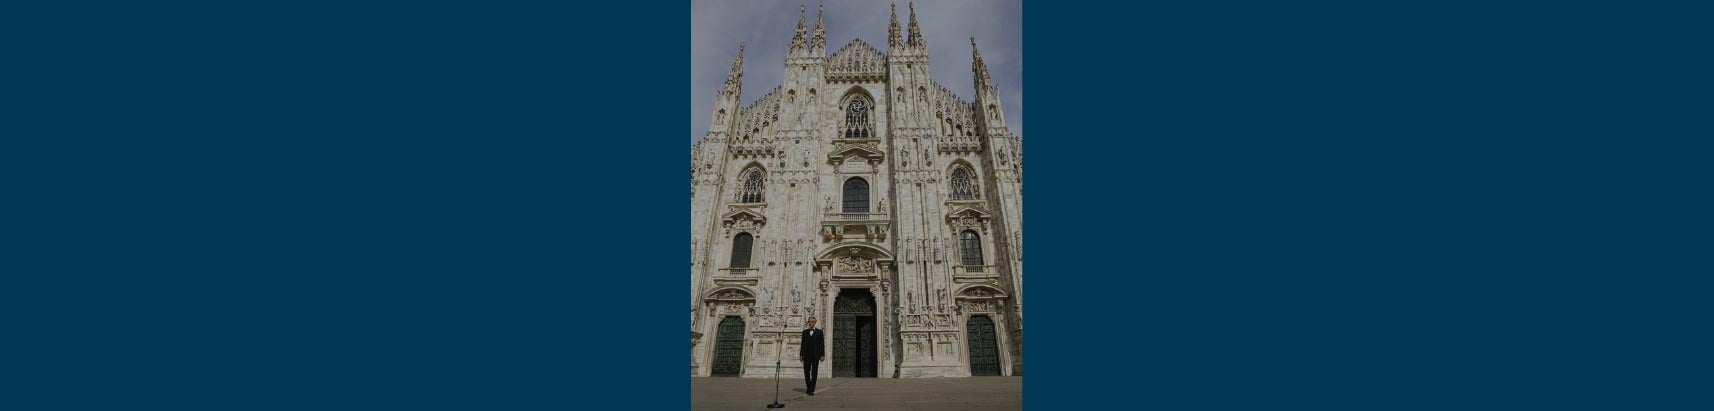 Duomo-cover